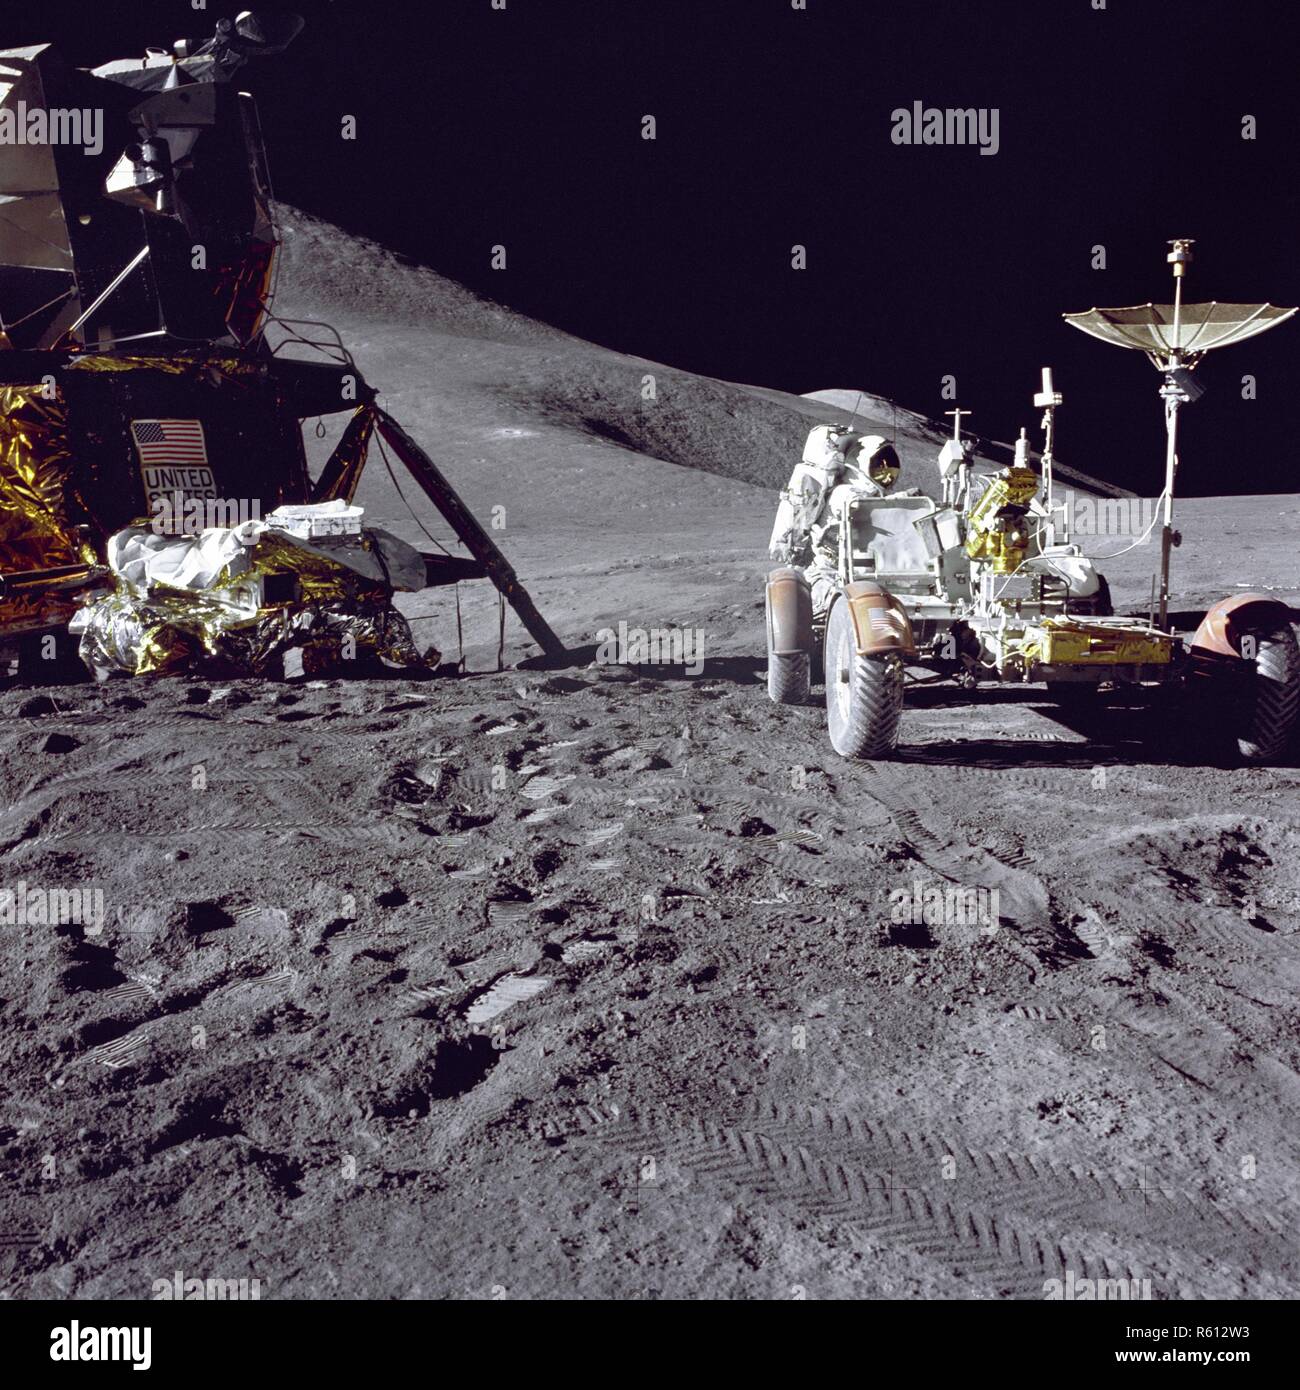 Apollo 15 Of The Lunar Rover, nasa.jpg - R612W3 Stock Photo